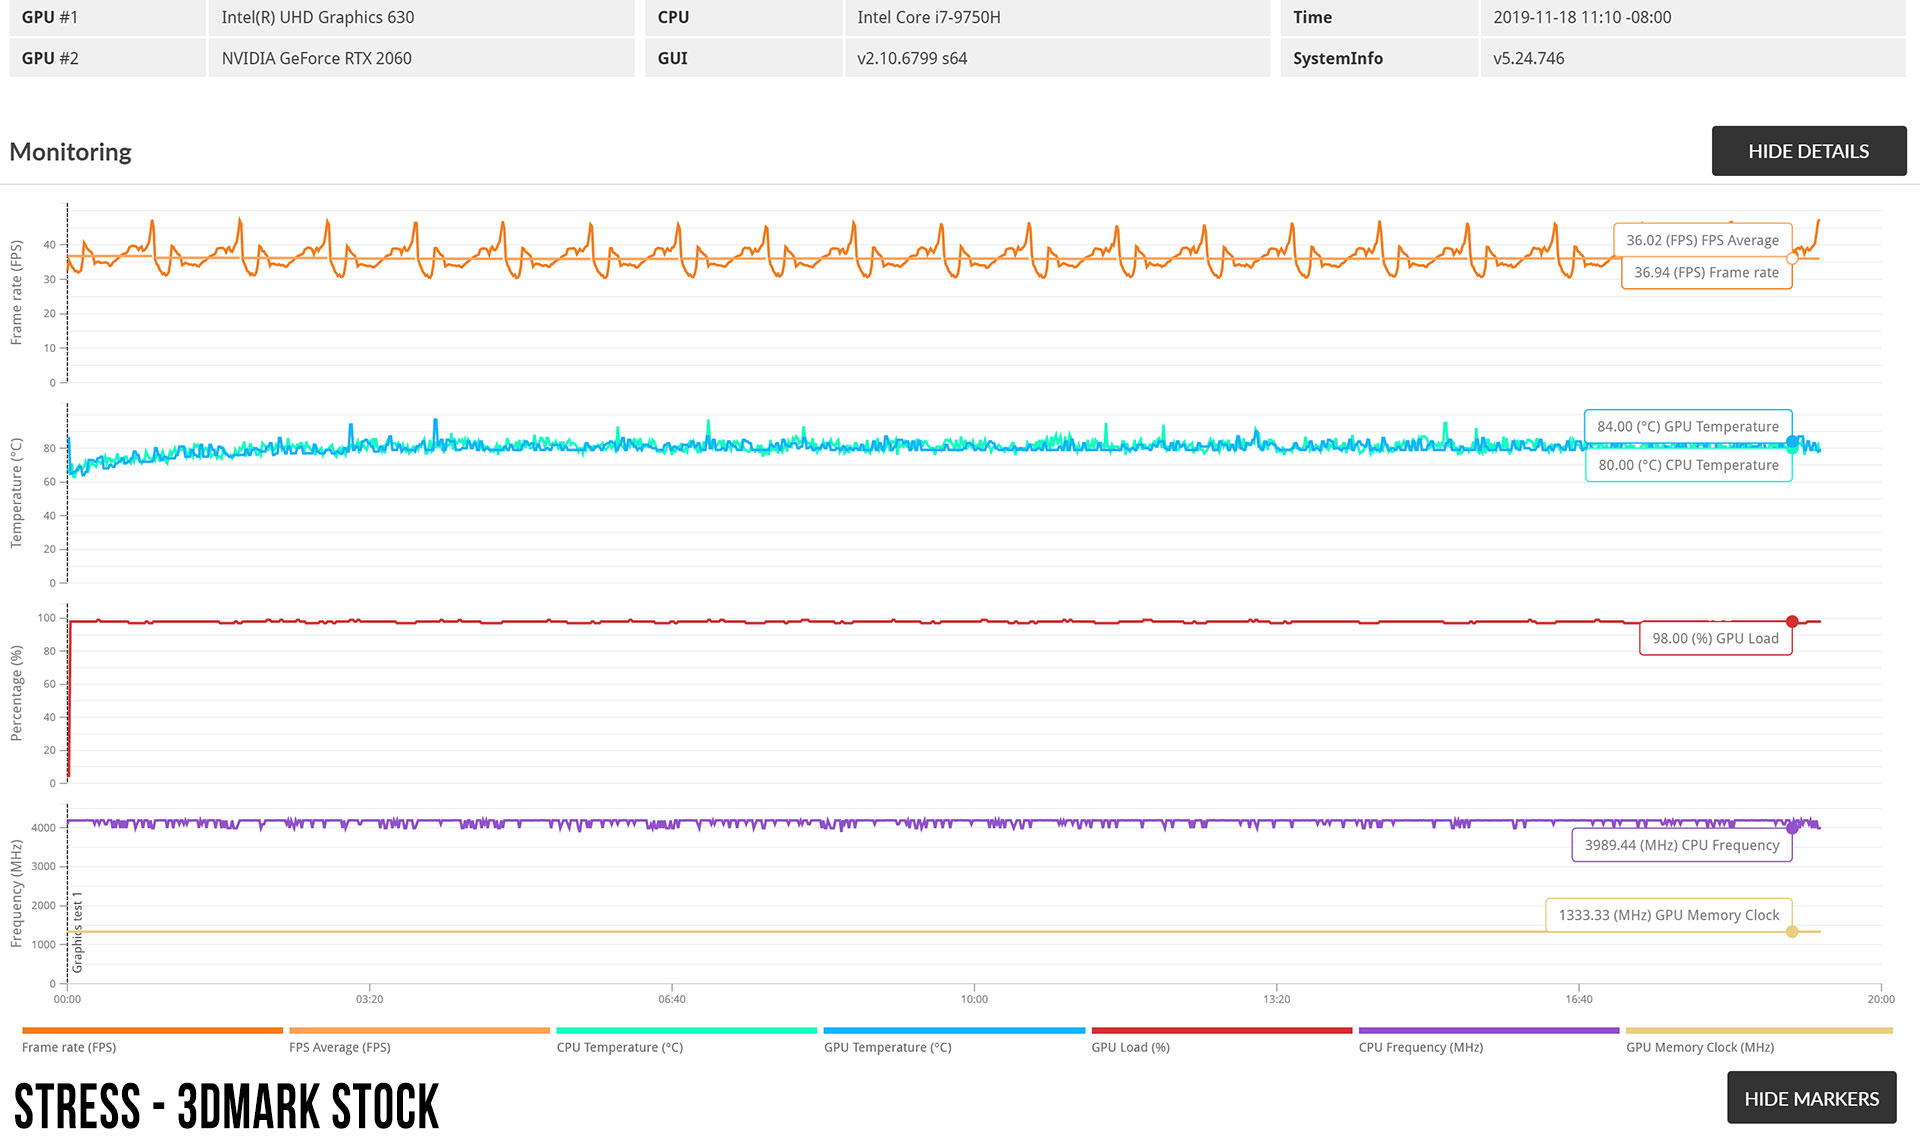 3dmark-stress-stock-monitoring-1.jpg